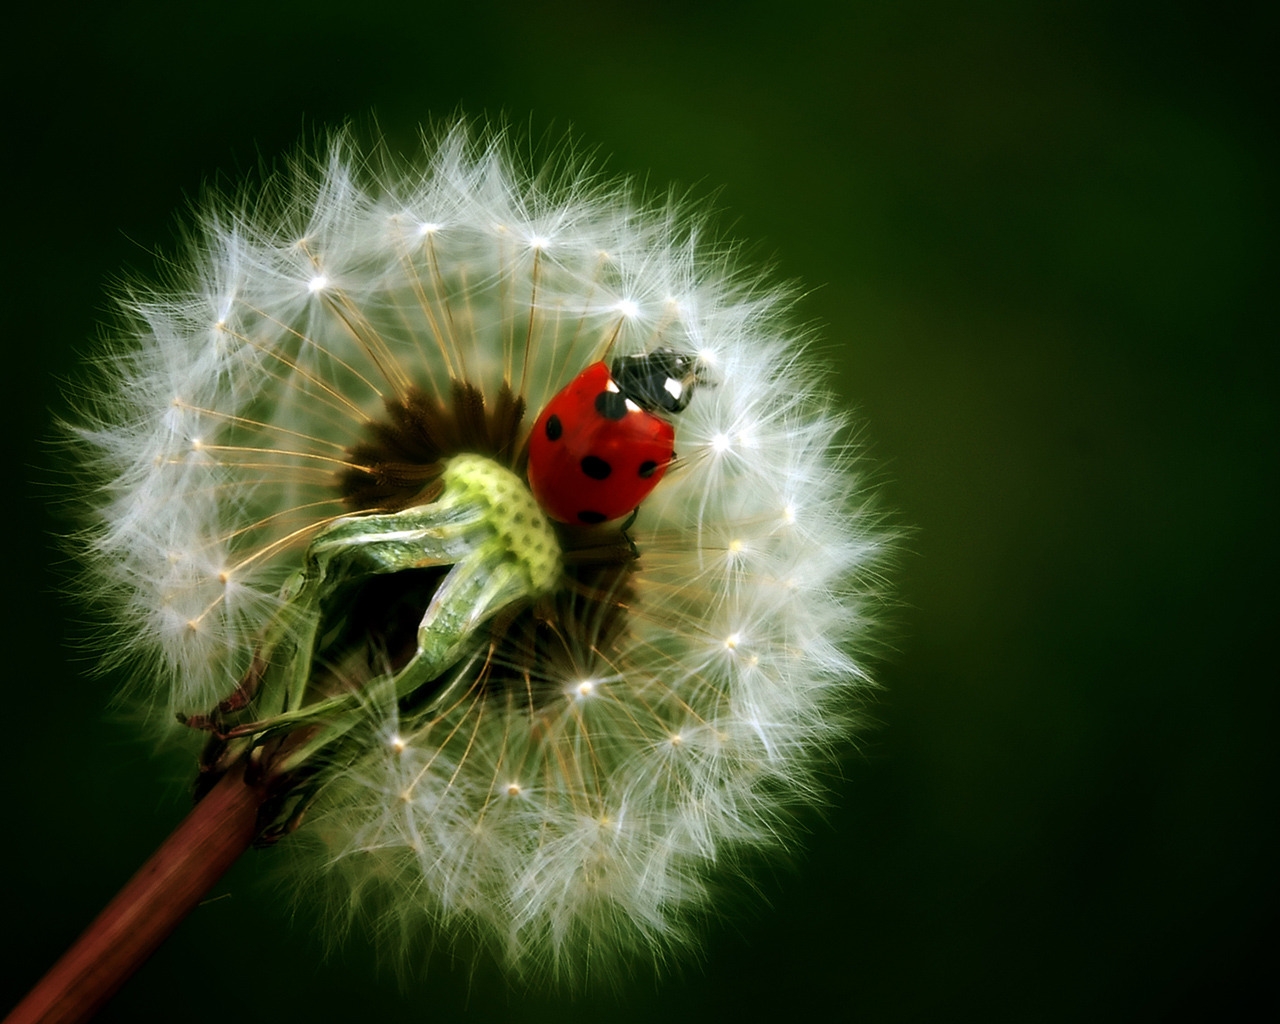 Ladybug for 1280 x 1024 resolution